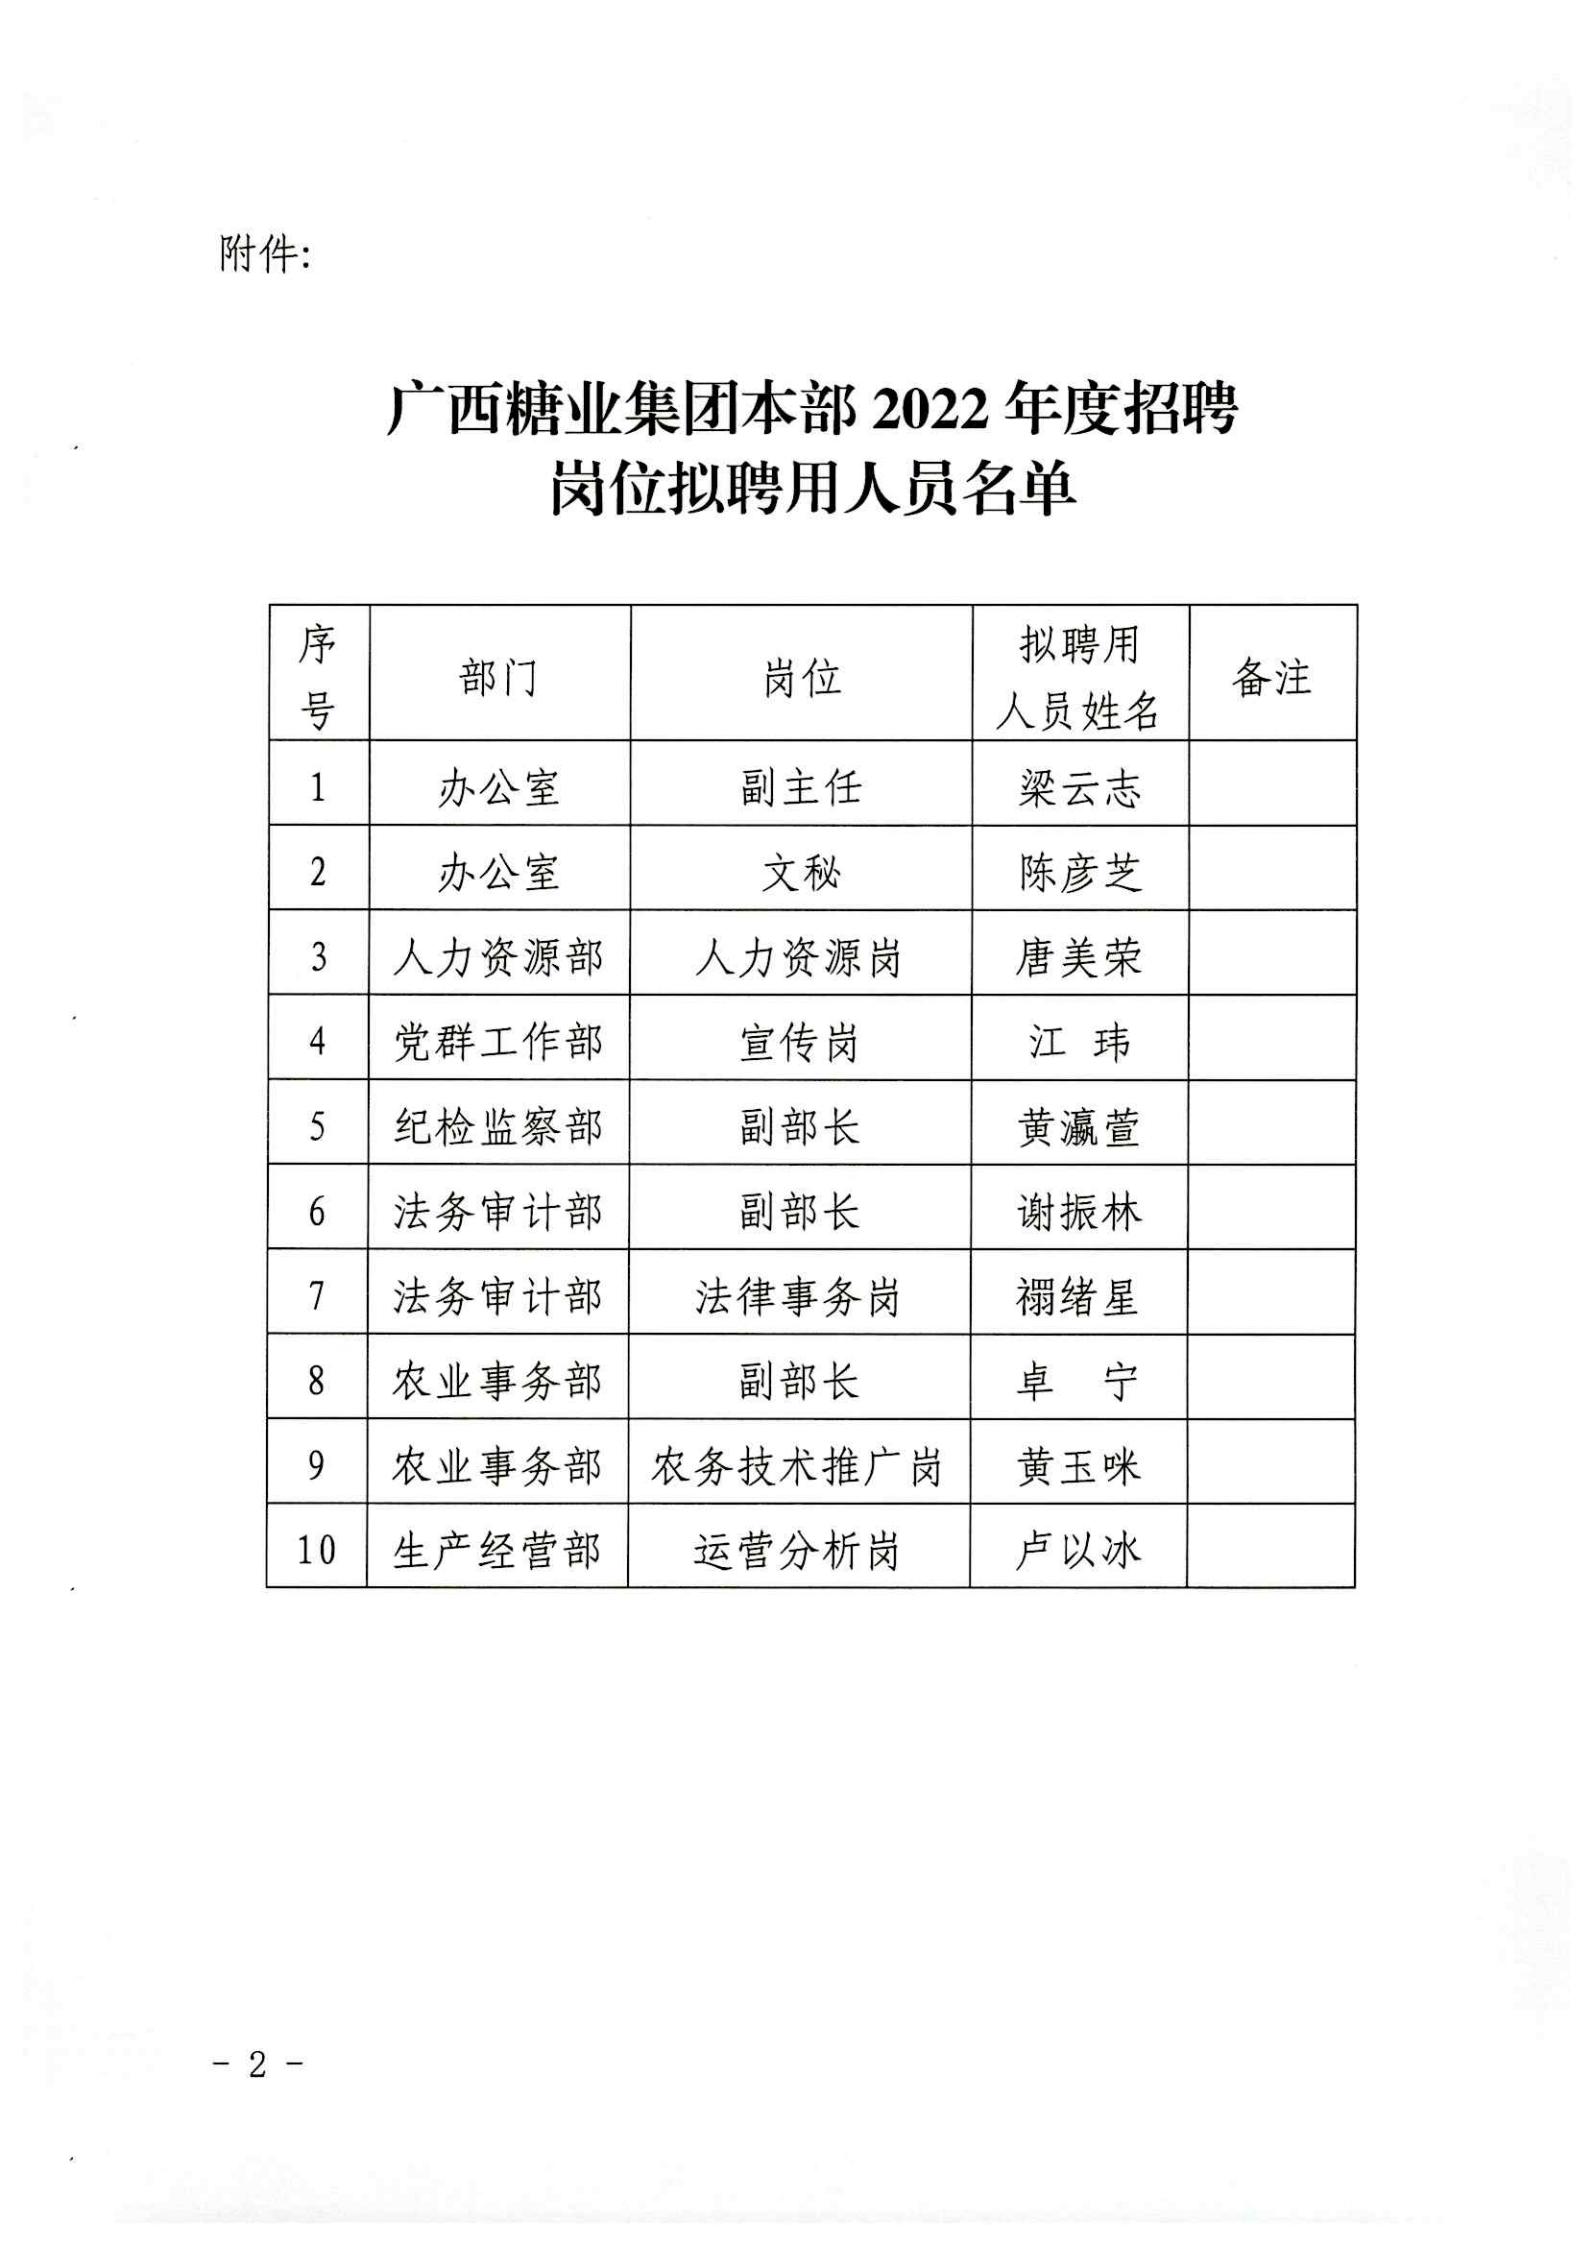 江南平台(中国)有限公司本部2022年度招聘岗位拟聘用人员名单公示 (2)_02.jpg